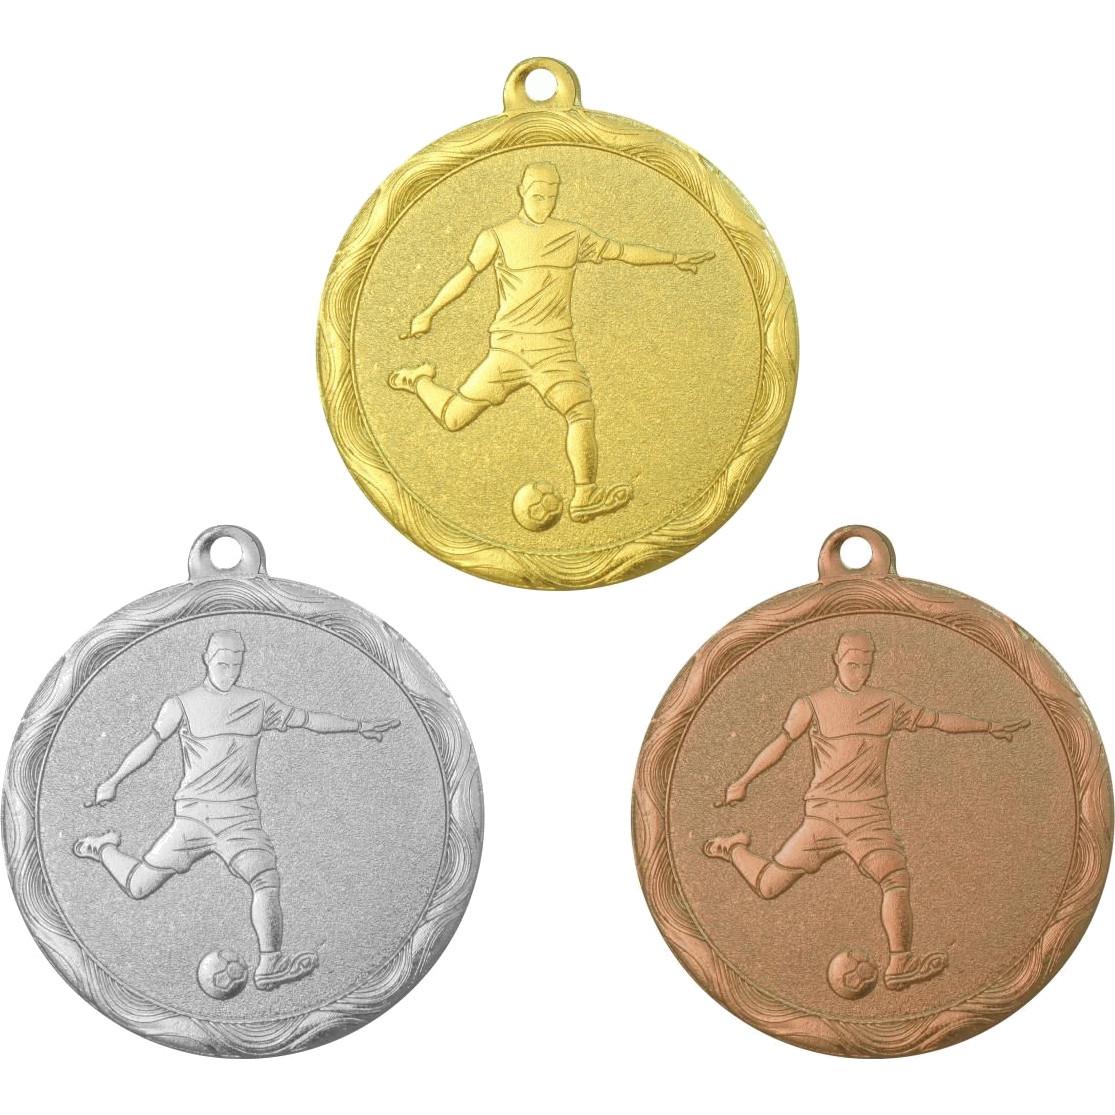 Комплект из трёх медалей №1276 (Футбол, диаметр 50 мм, металл. Место для вставок: обратная сторона диаметр 45 мм)